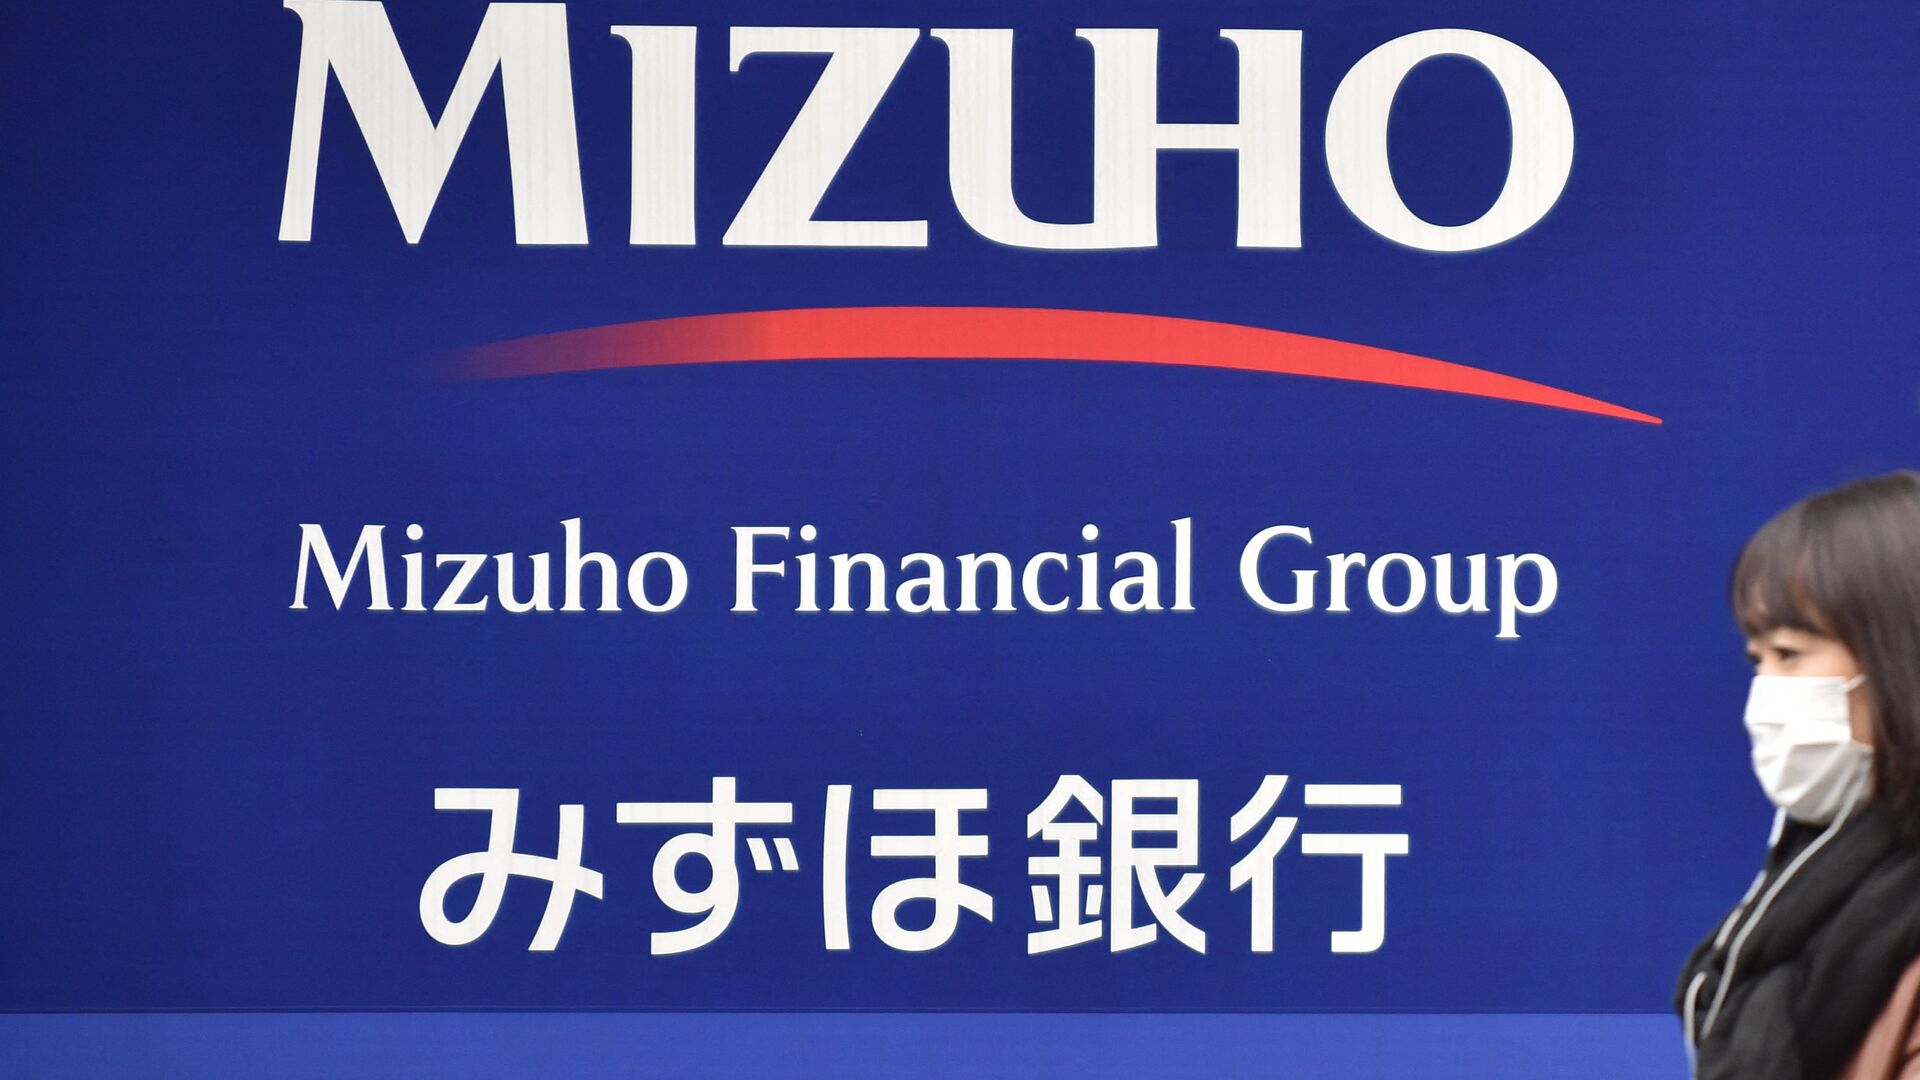 Вывеска японской финансовой группы Mizuho Financial Group - Sputnik 日本, 1920, 11.01.2022